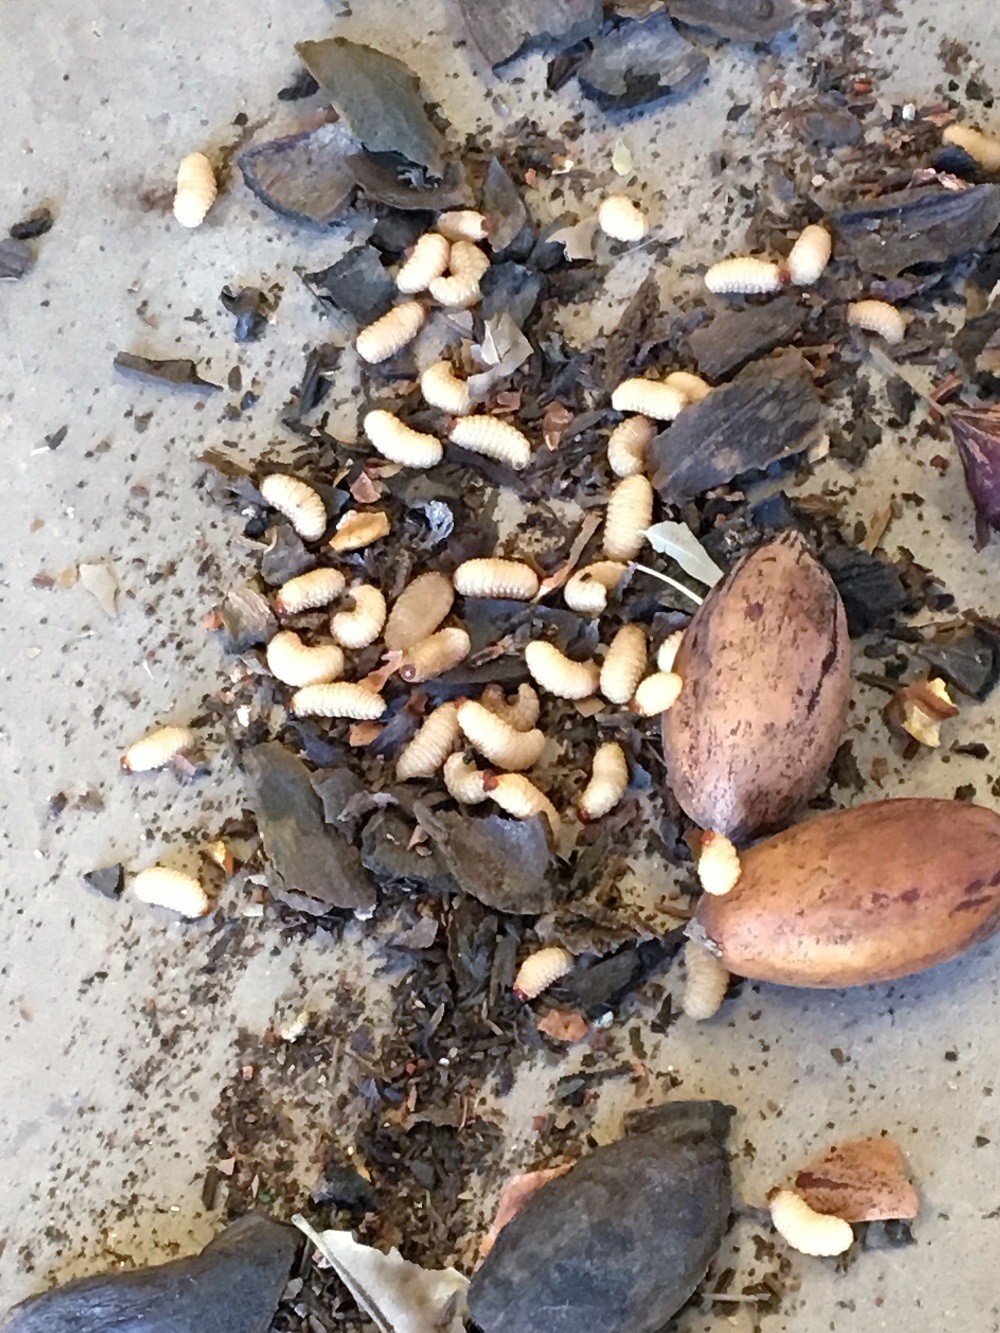 Nueces mezcladas con varias larvas alrededor de las cáscaras.